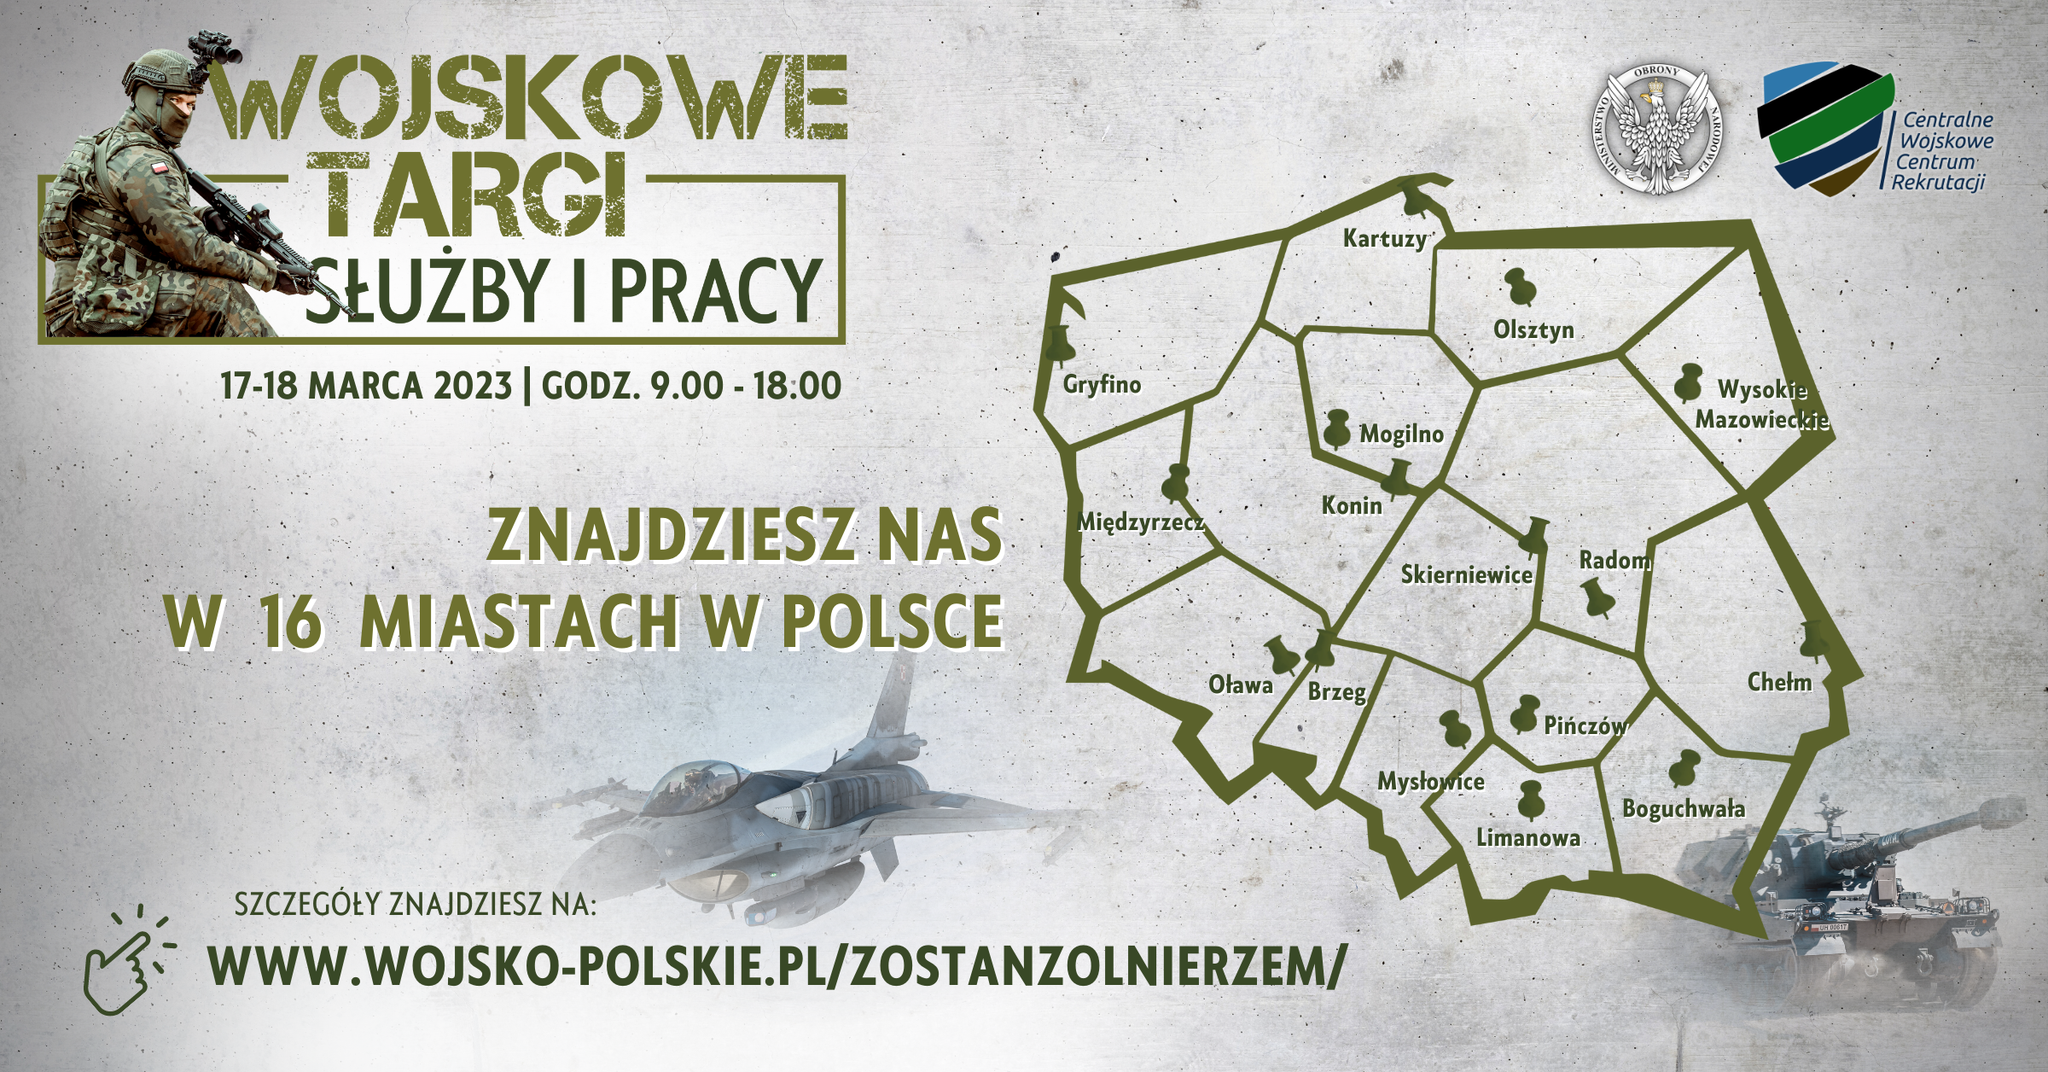 Baner informacyjny Wojskowych Targów Służby i Pracy przedstawiający uproszczoną mape Polski z zaznaczonymi 16 miastami